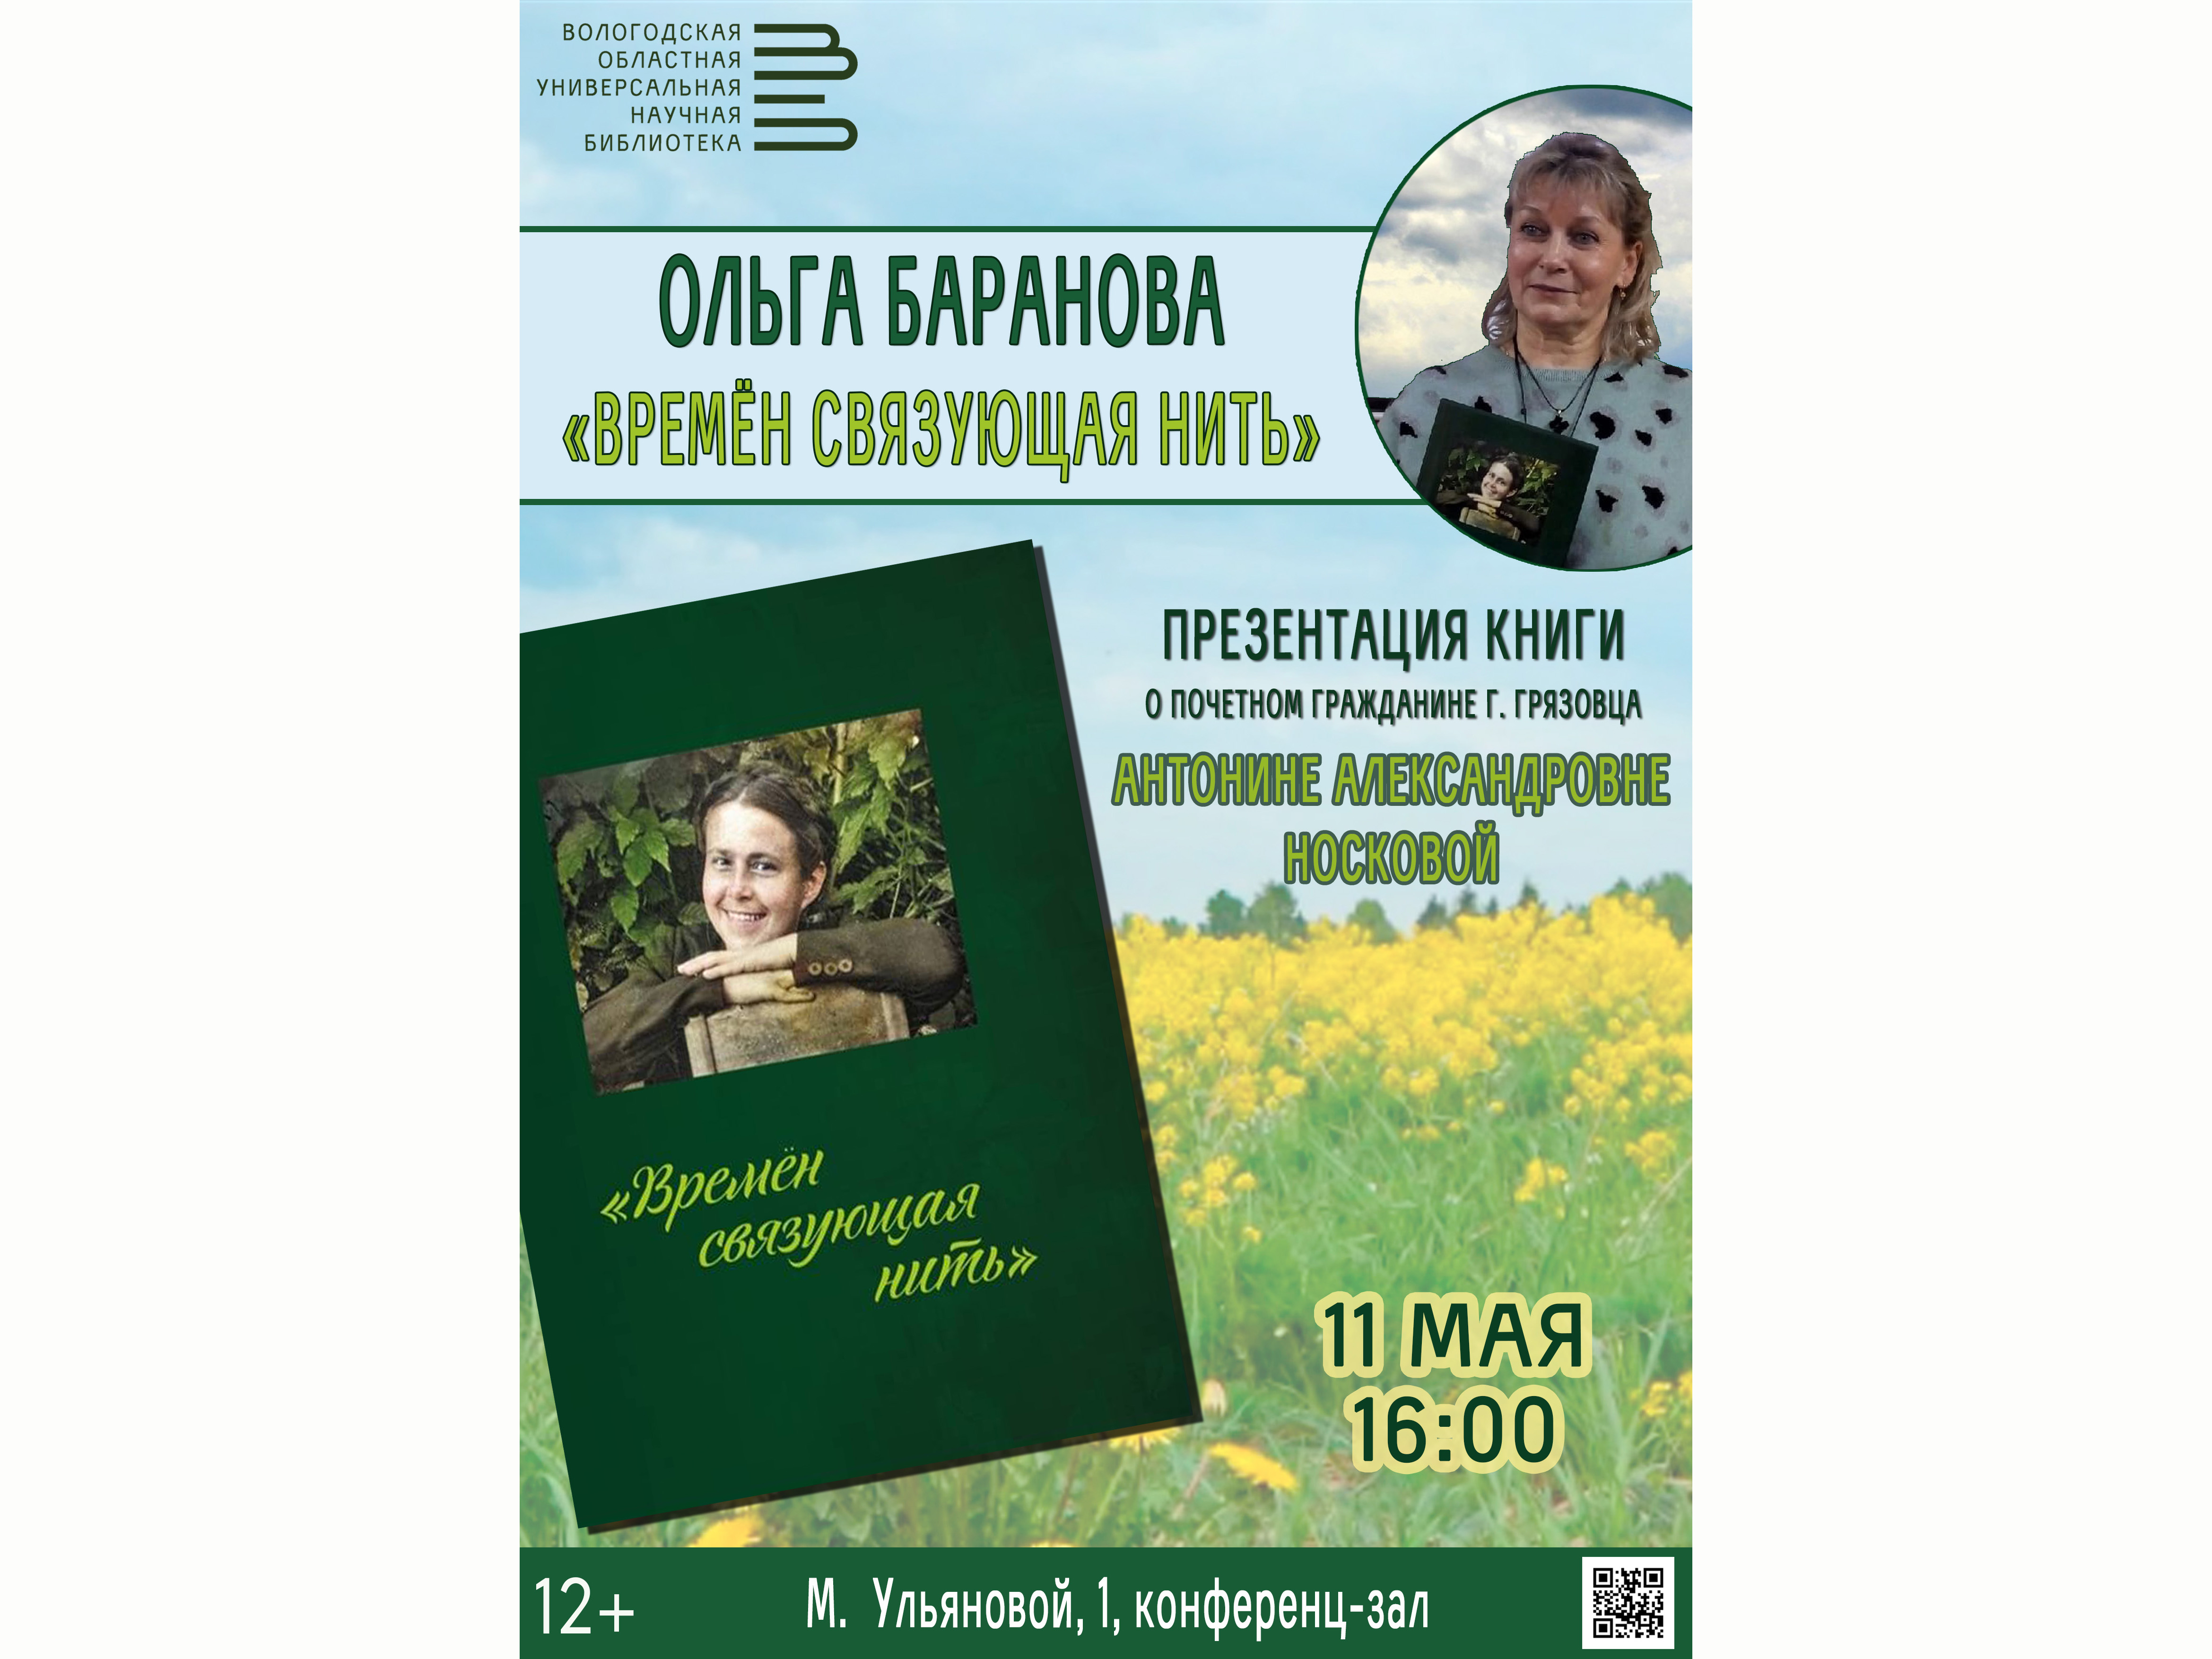 Презентация книги грязовецкого краеведа Ольги Барановой пройдет в Областной научной библиотеке